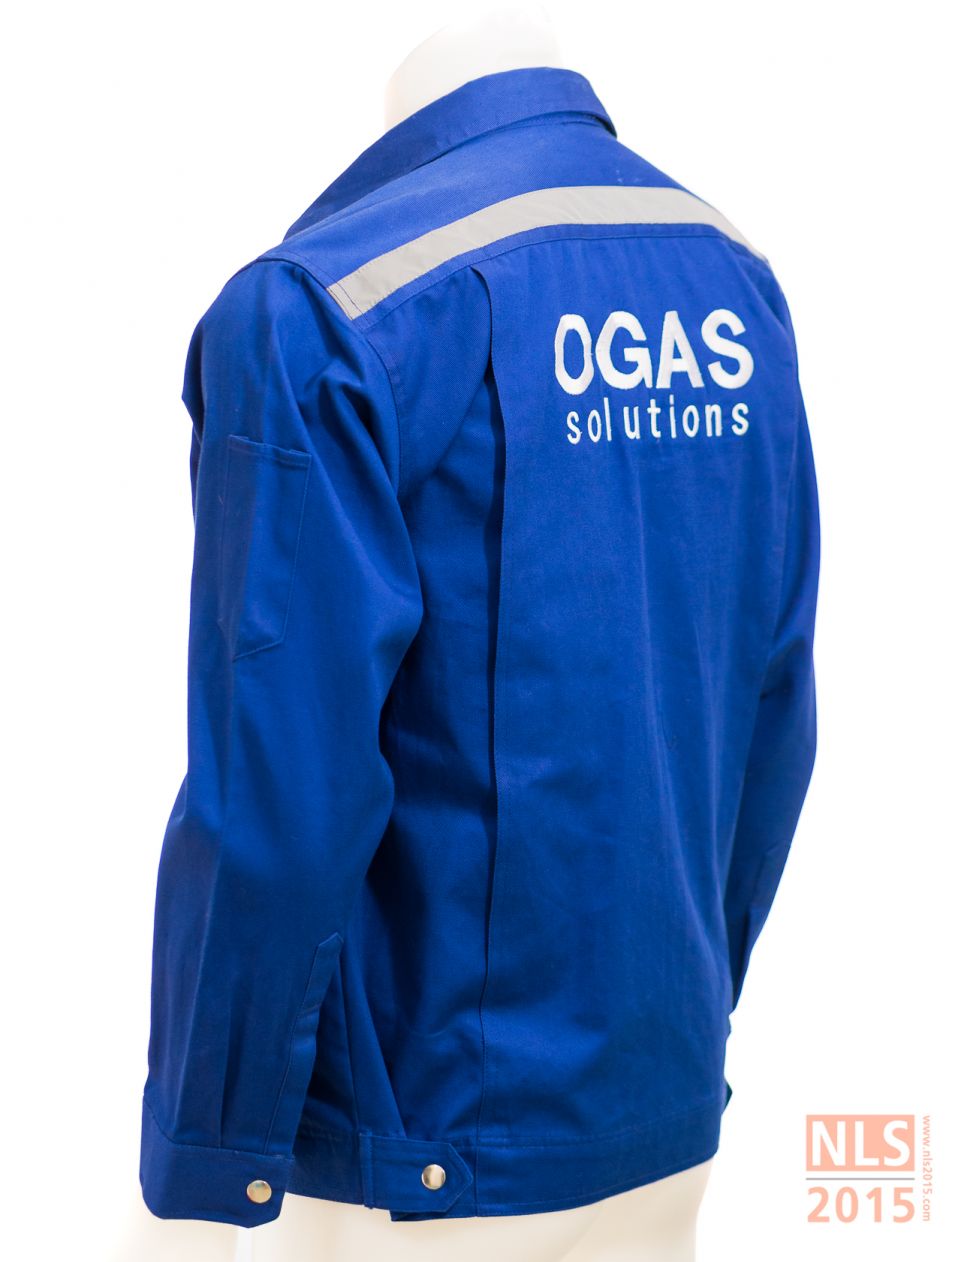 เครื่องแบบพนักงาน OGAS / โรงงานผลิตชุดยูนิฟอร์มพนักงาน เสื้อโปโล นลินสิริ ชลบุรีรูปที่ 